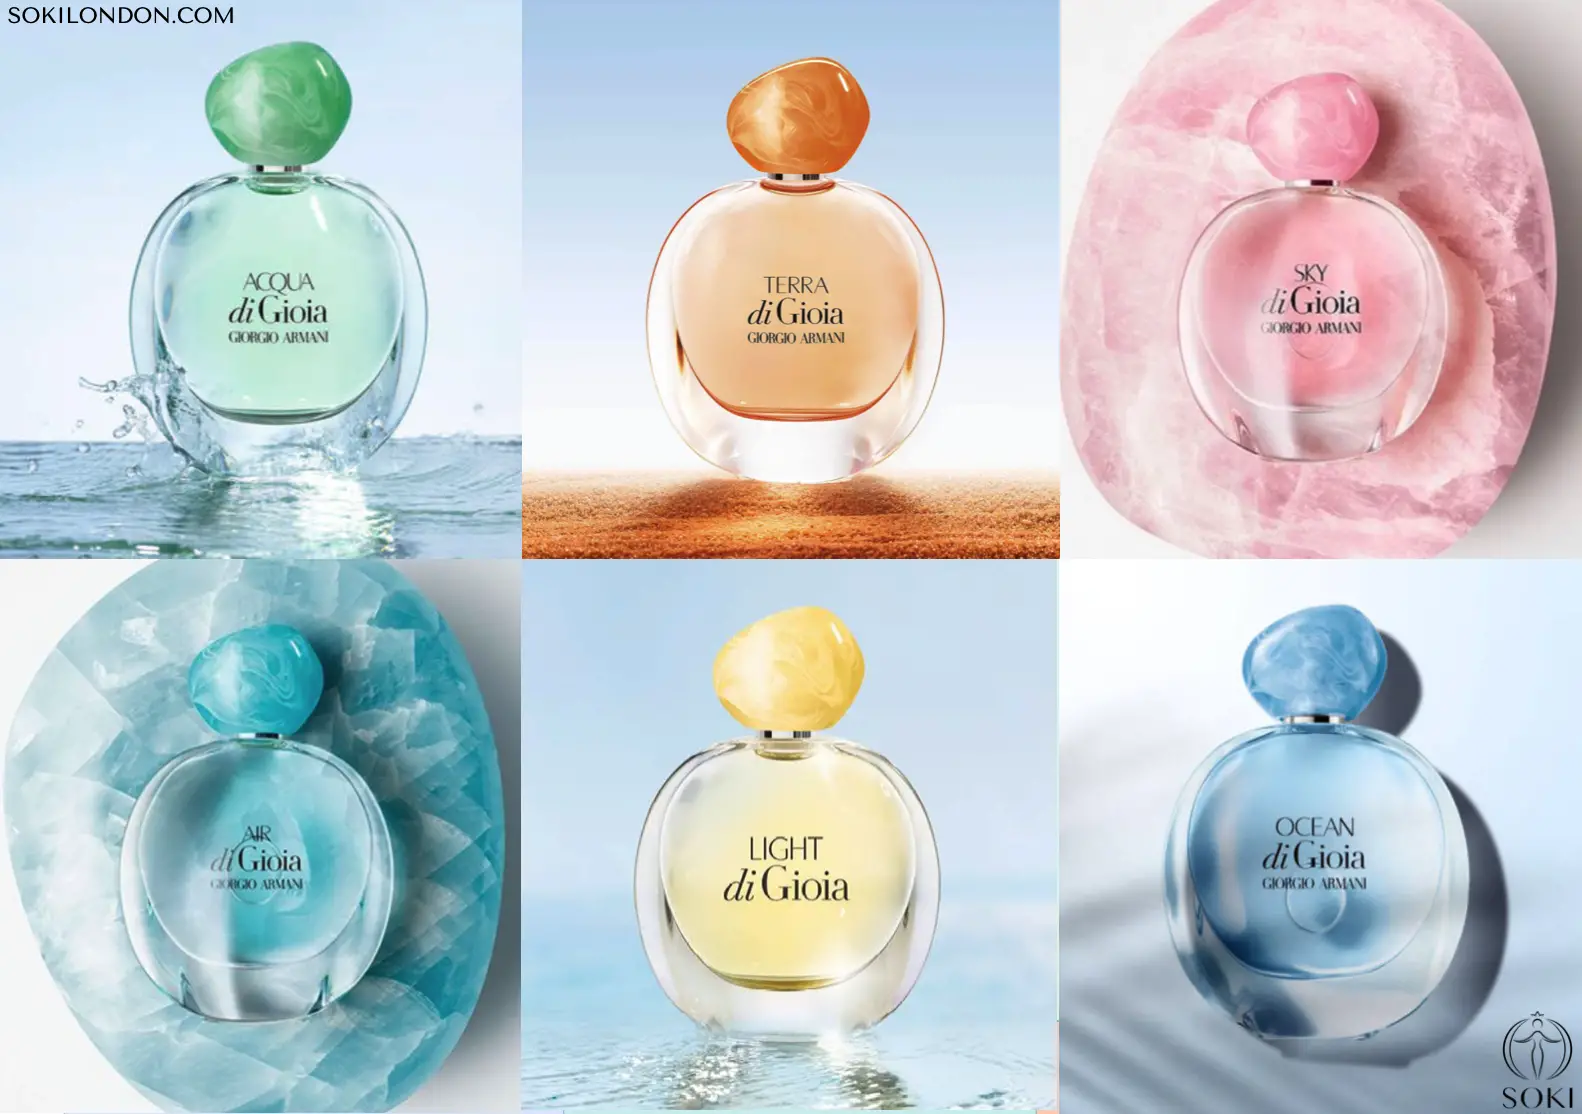 The Ultimate Guide To The Giorgio Armani Acqua Di Gioia Perfumes